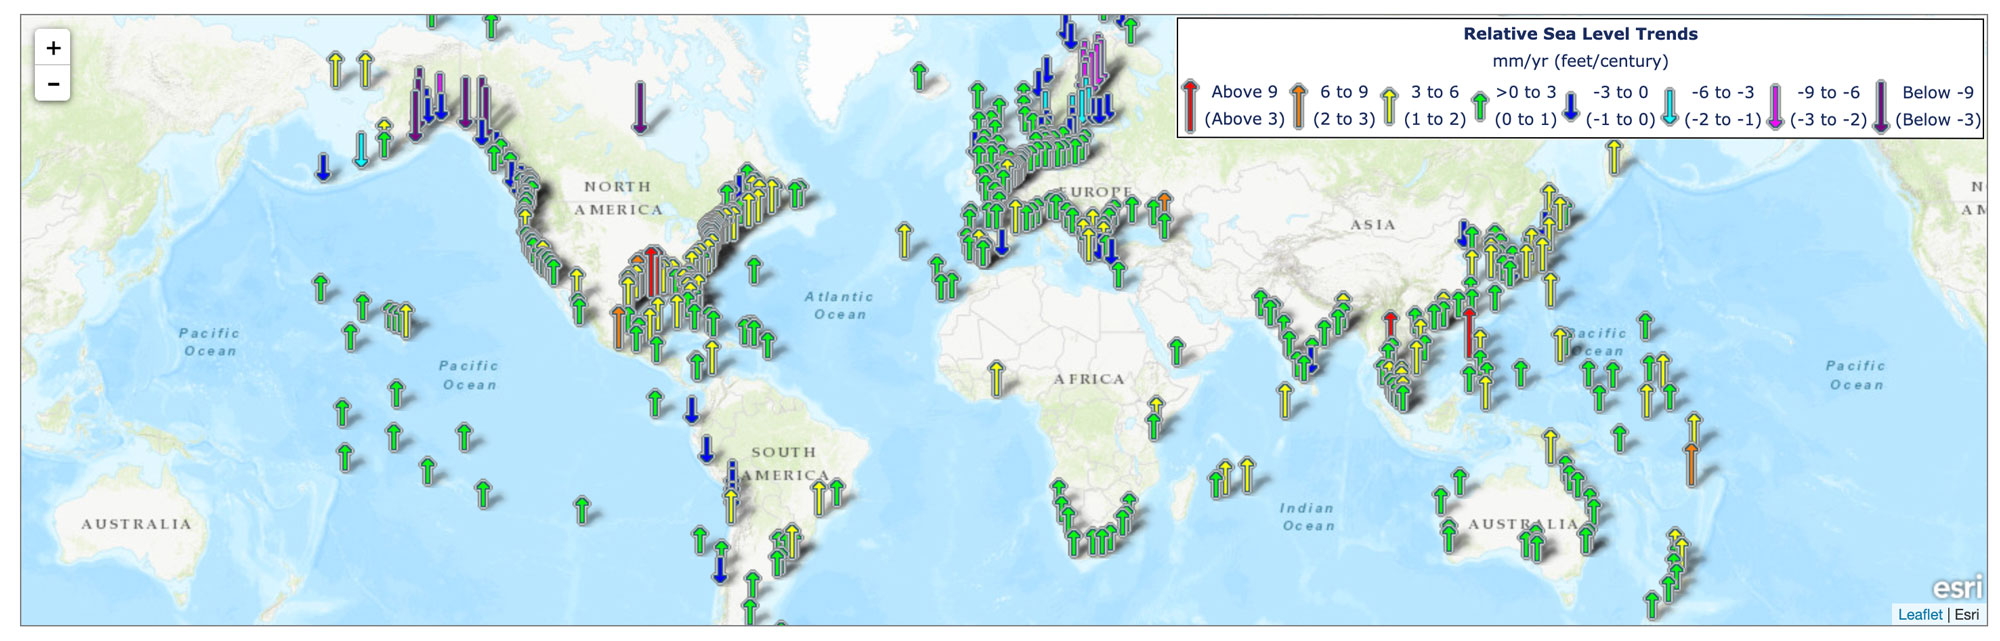 Global map showing regional sea level trends worldwide.